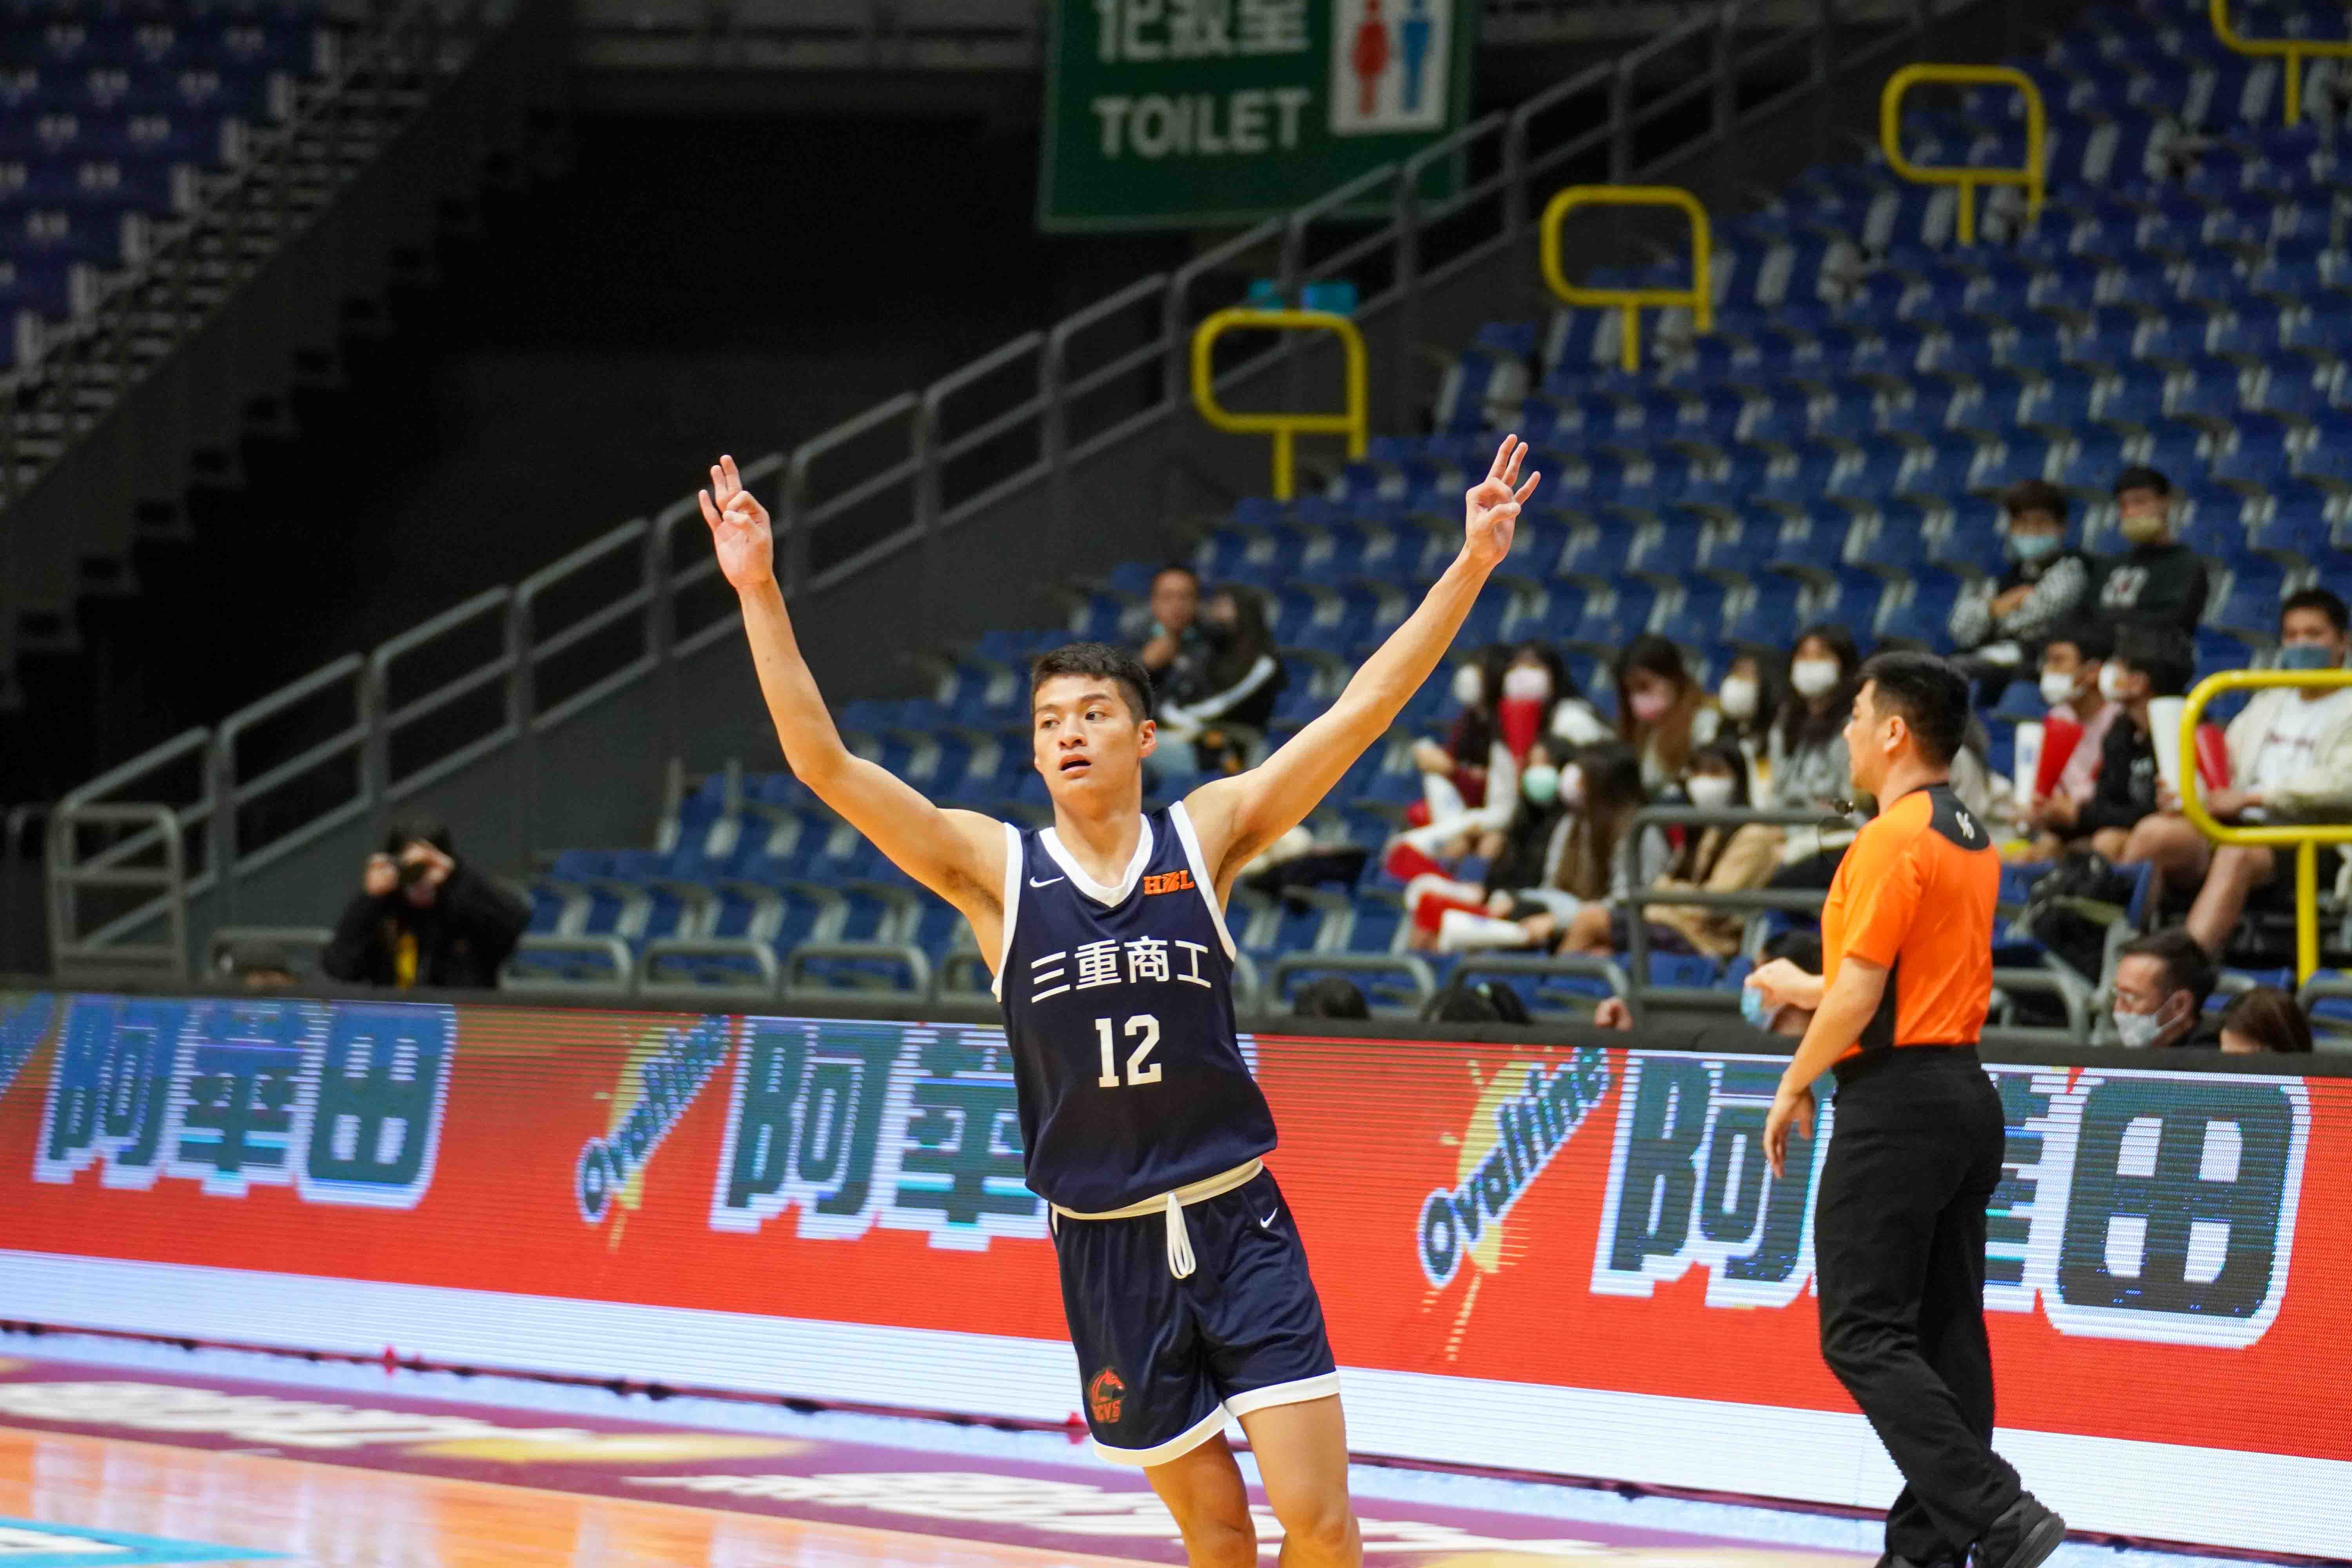 三重一哥陳皇宇21分16籃板複賽6戰首次資格賽迄今6度雙十。大會提供